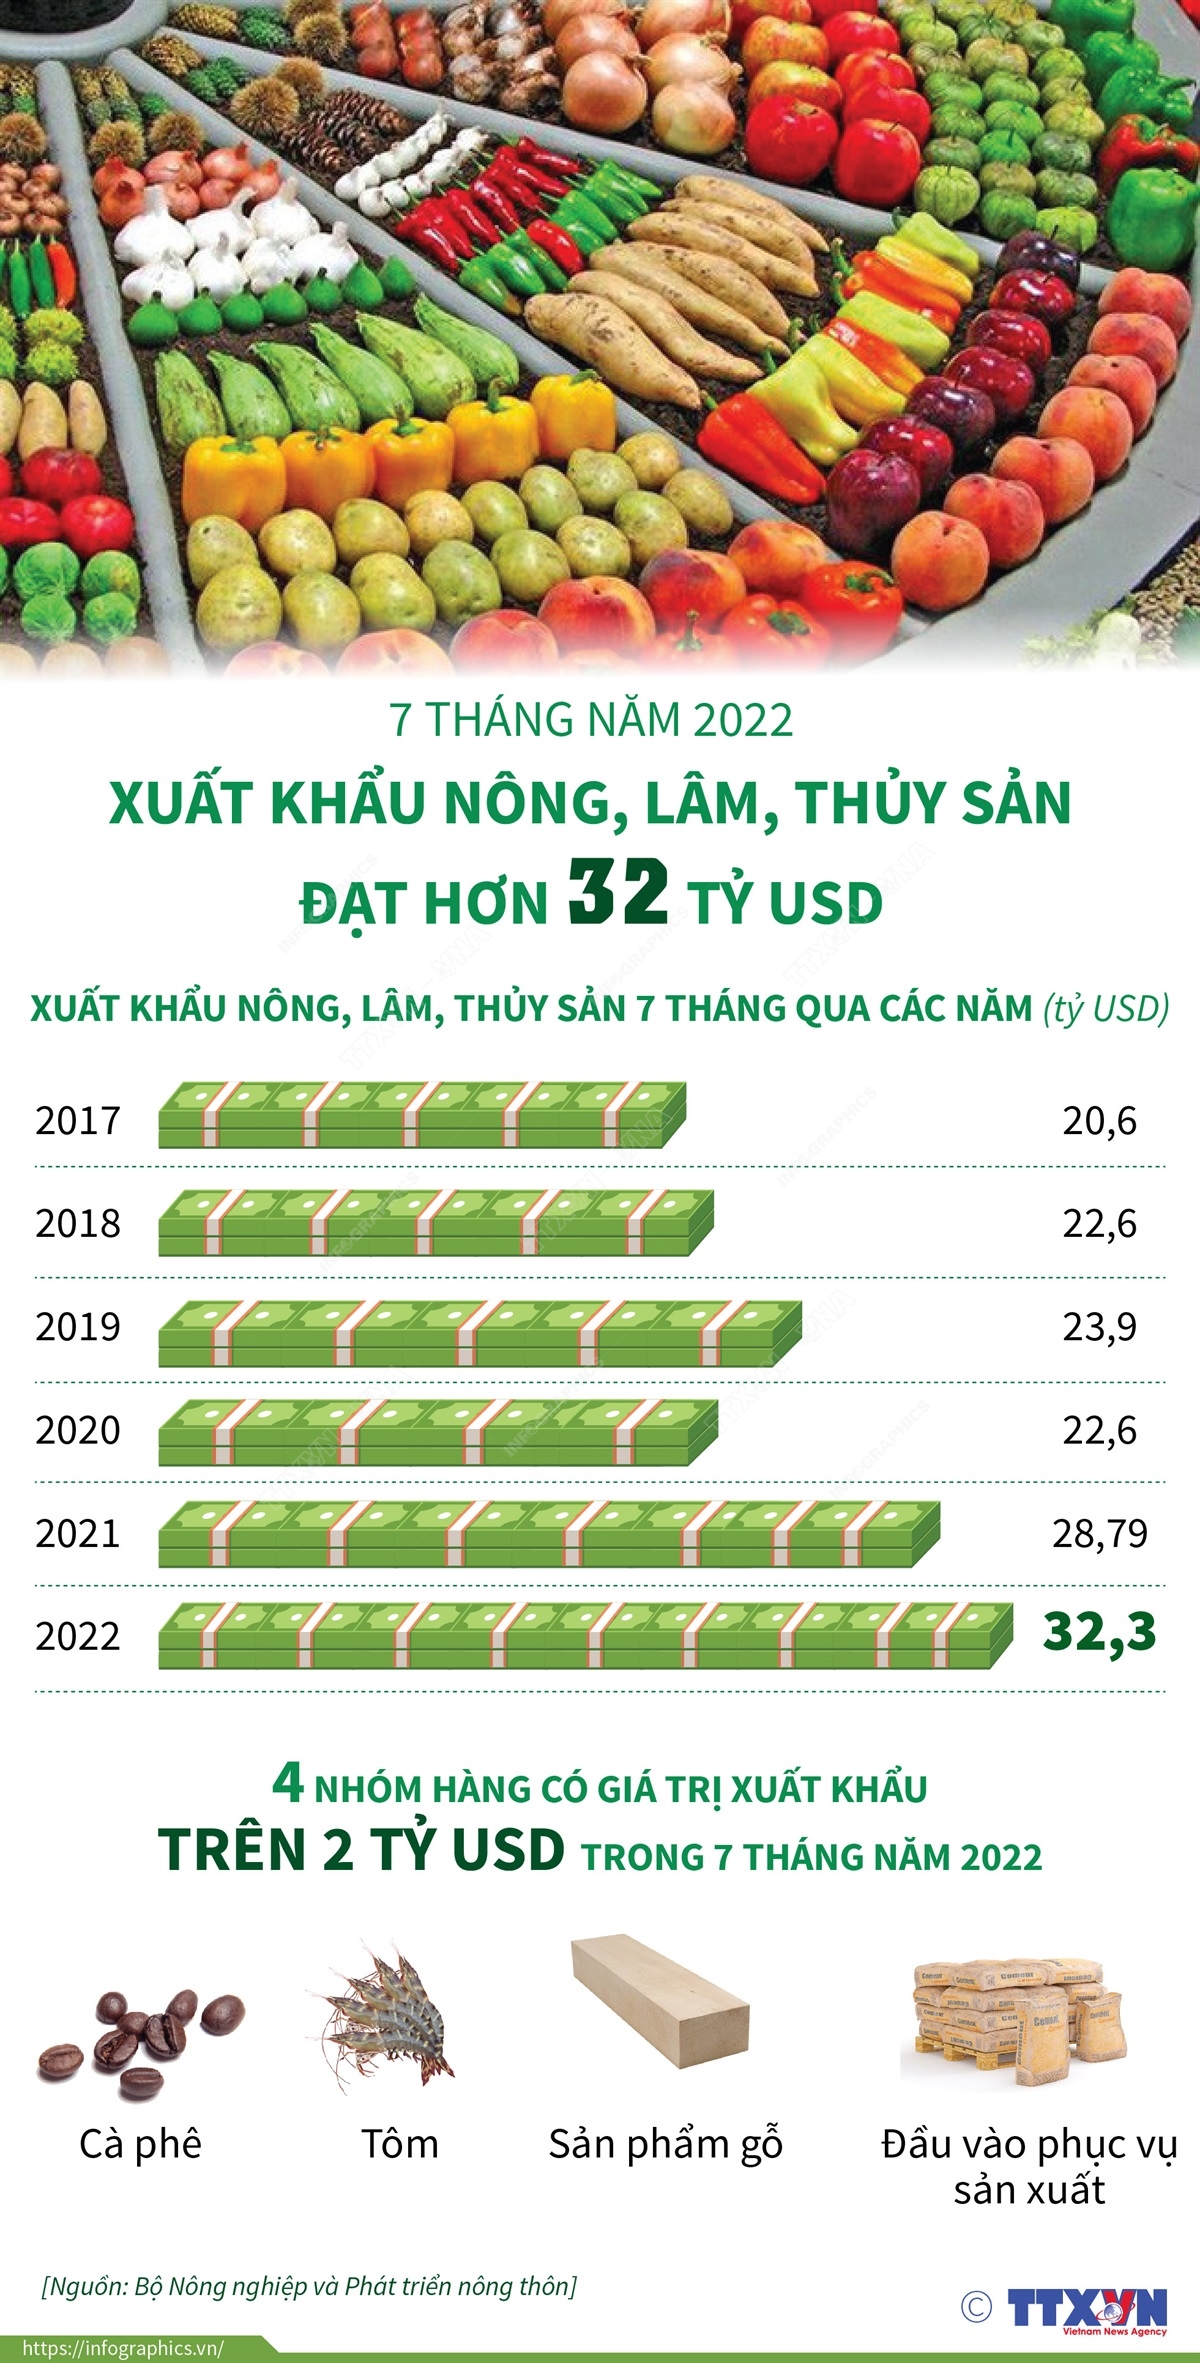 2022-8-3-vn-xk-nong-lam-thuy-t7_03_ngoc